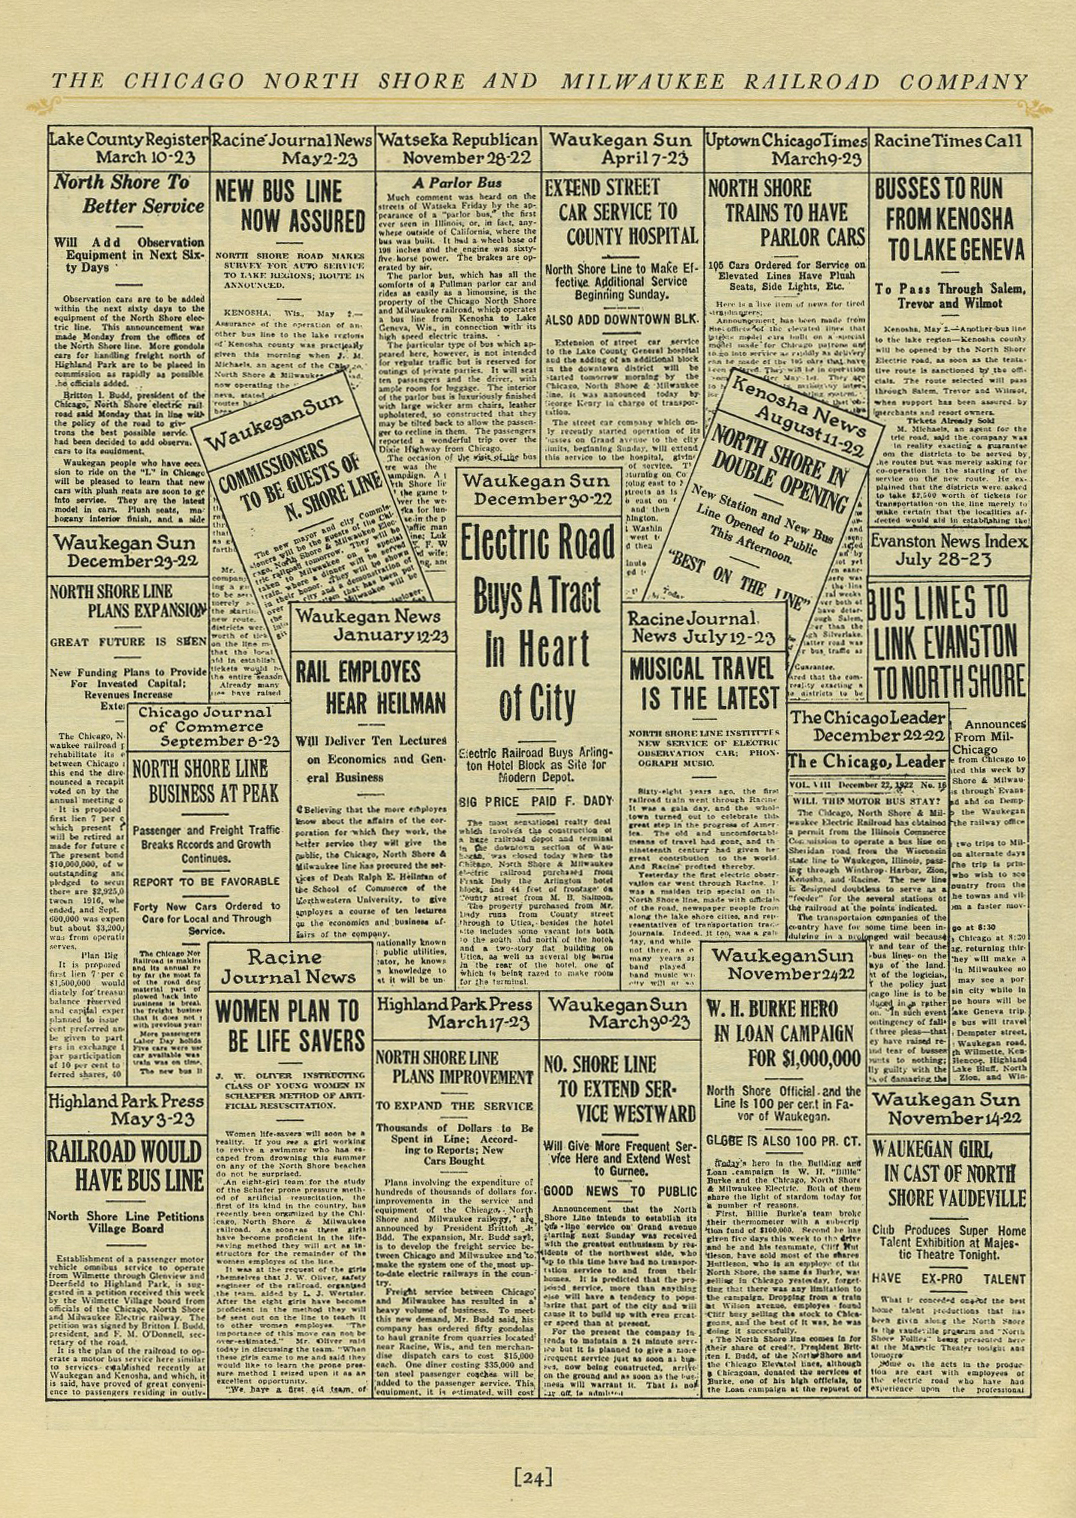 Miami gazette [1923-11-07 through 1924-03-05] - Magazines